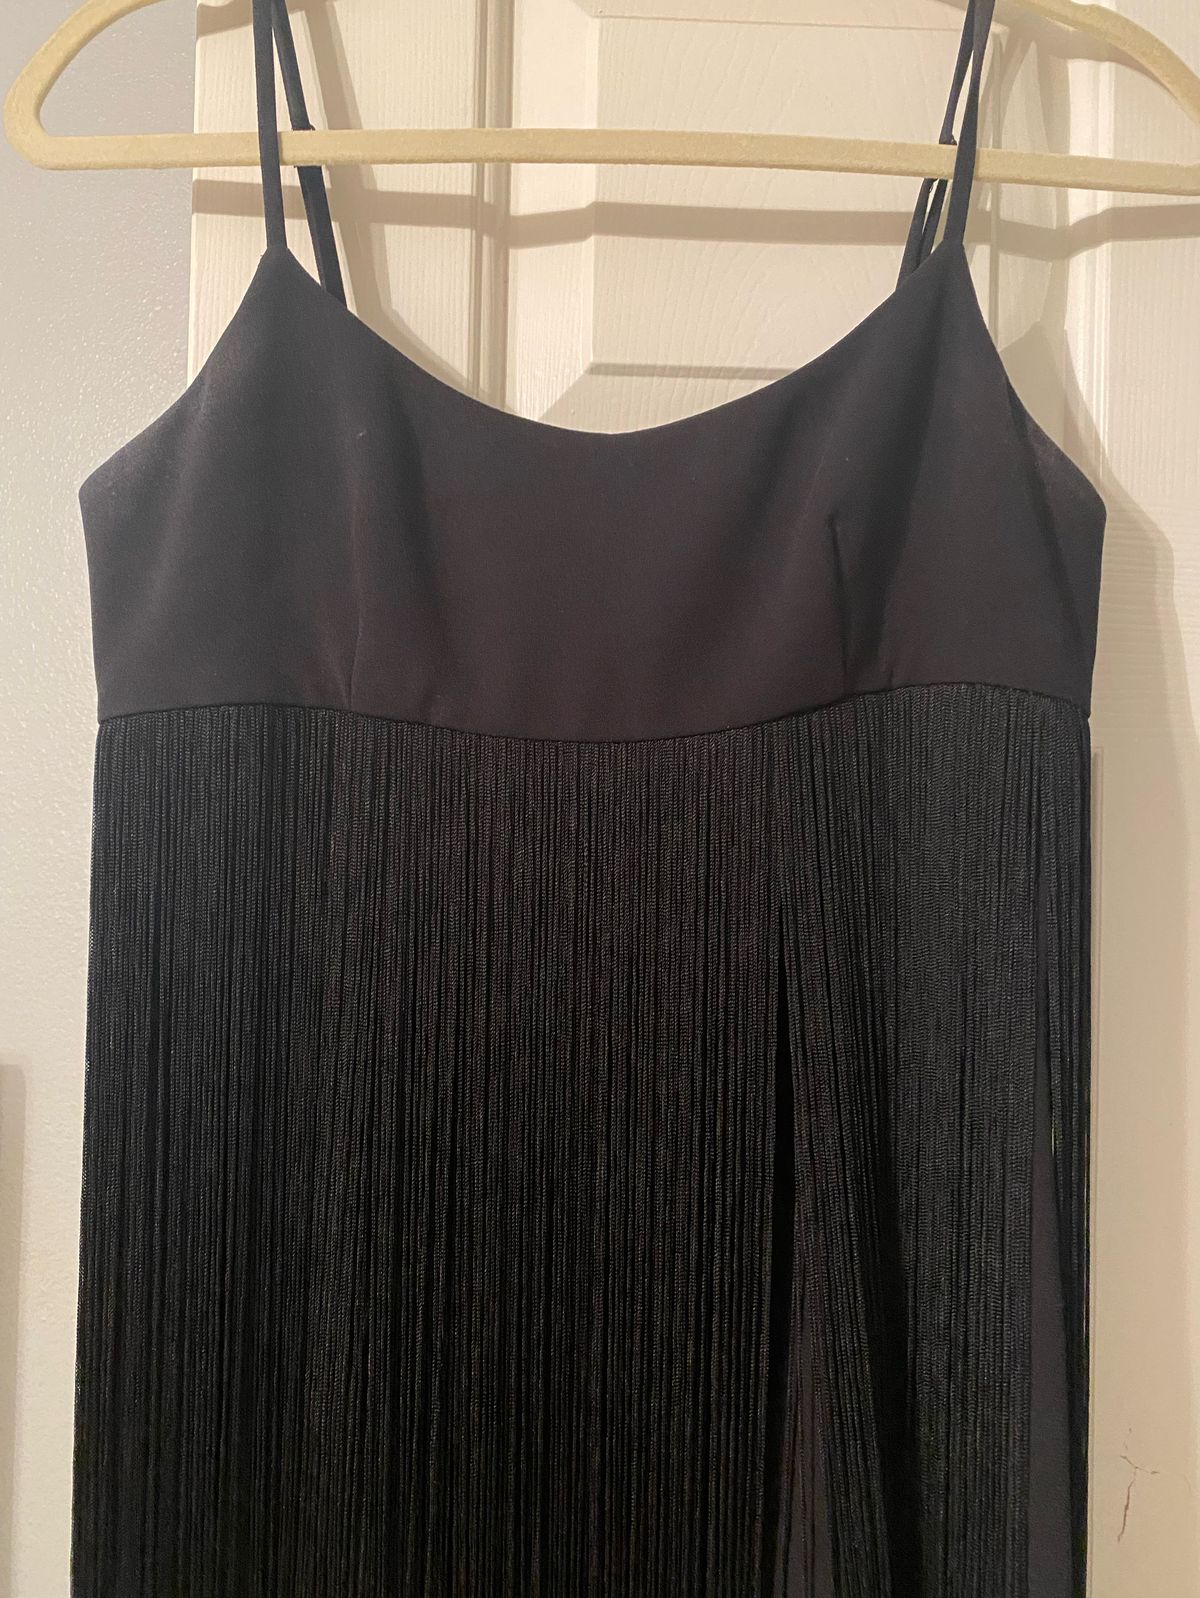 Calvin Klein Size 2 Black Cocktail Dress on Queenly